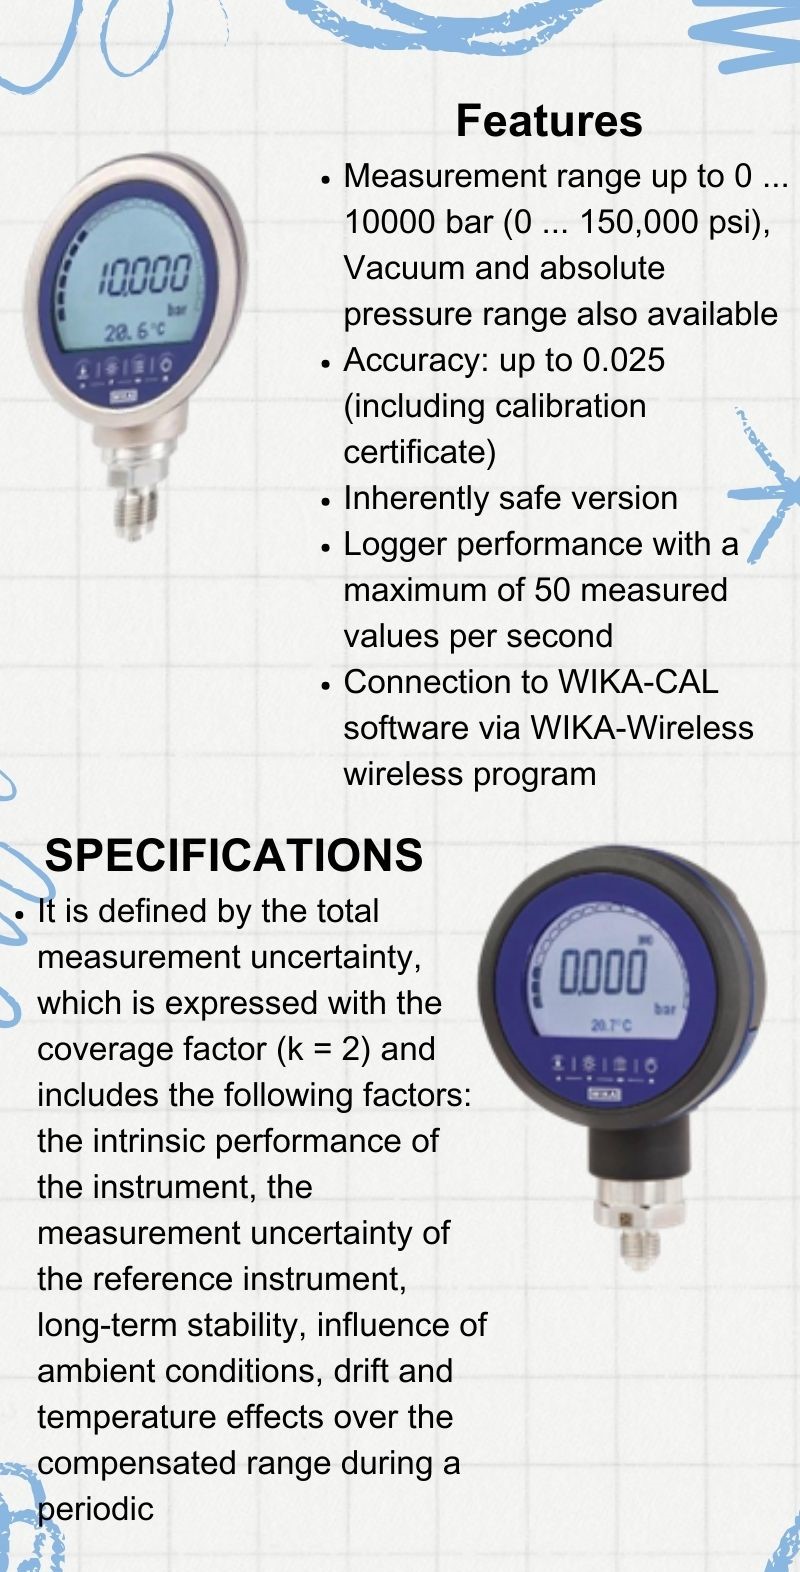 مشخصات و ویژگی های گیج فشار دیجیتال CPG1500 ویکا